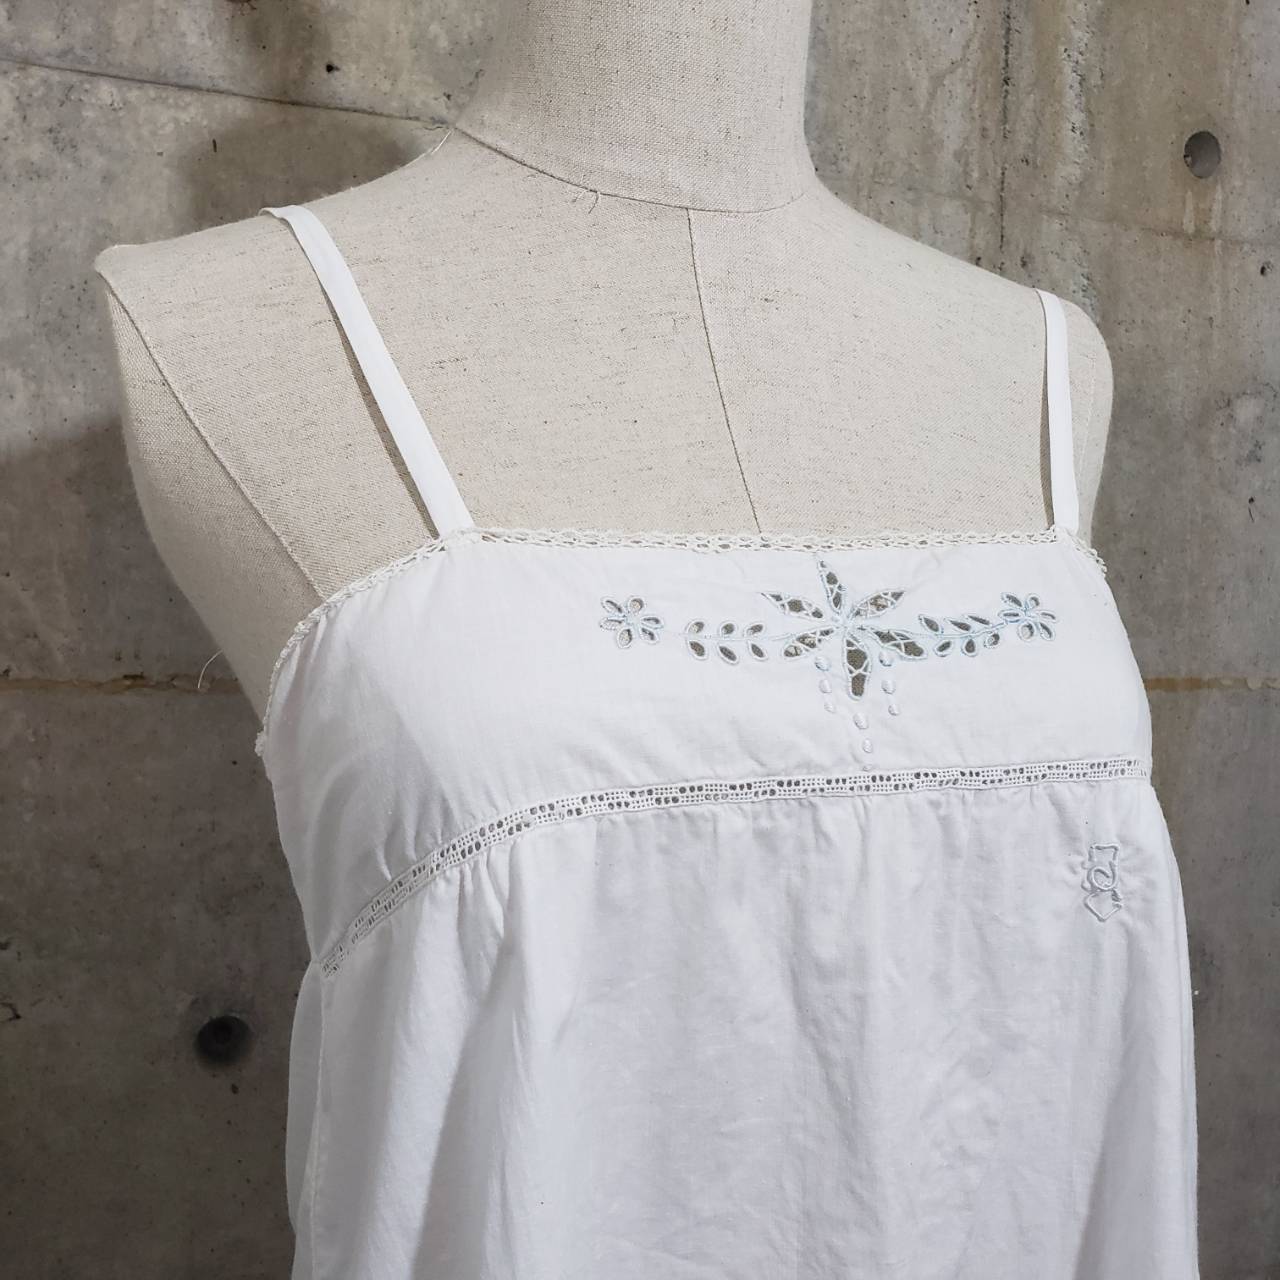 Euro Vintage(ヨーロッパヴィンテージ) Hirari_フレンチカットワークレース刺繍キャミソール 表記なし(Lサイズ程度) ホワイト